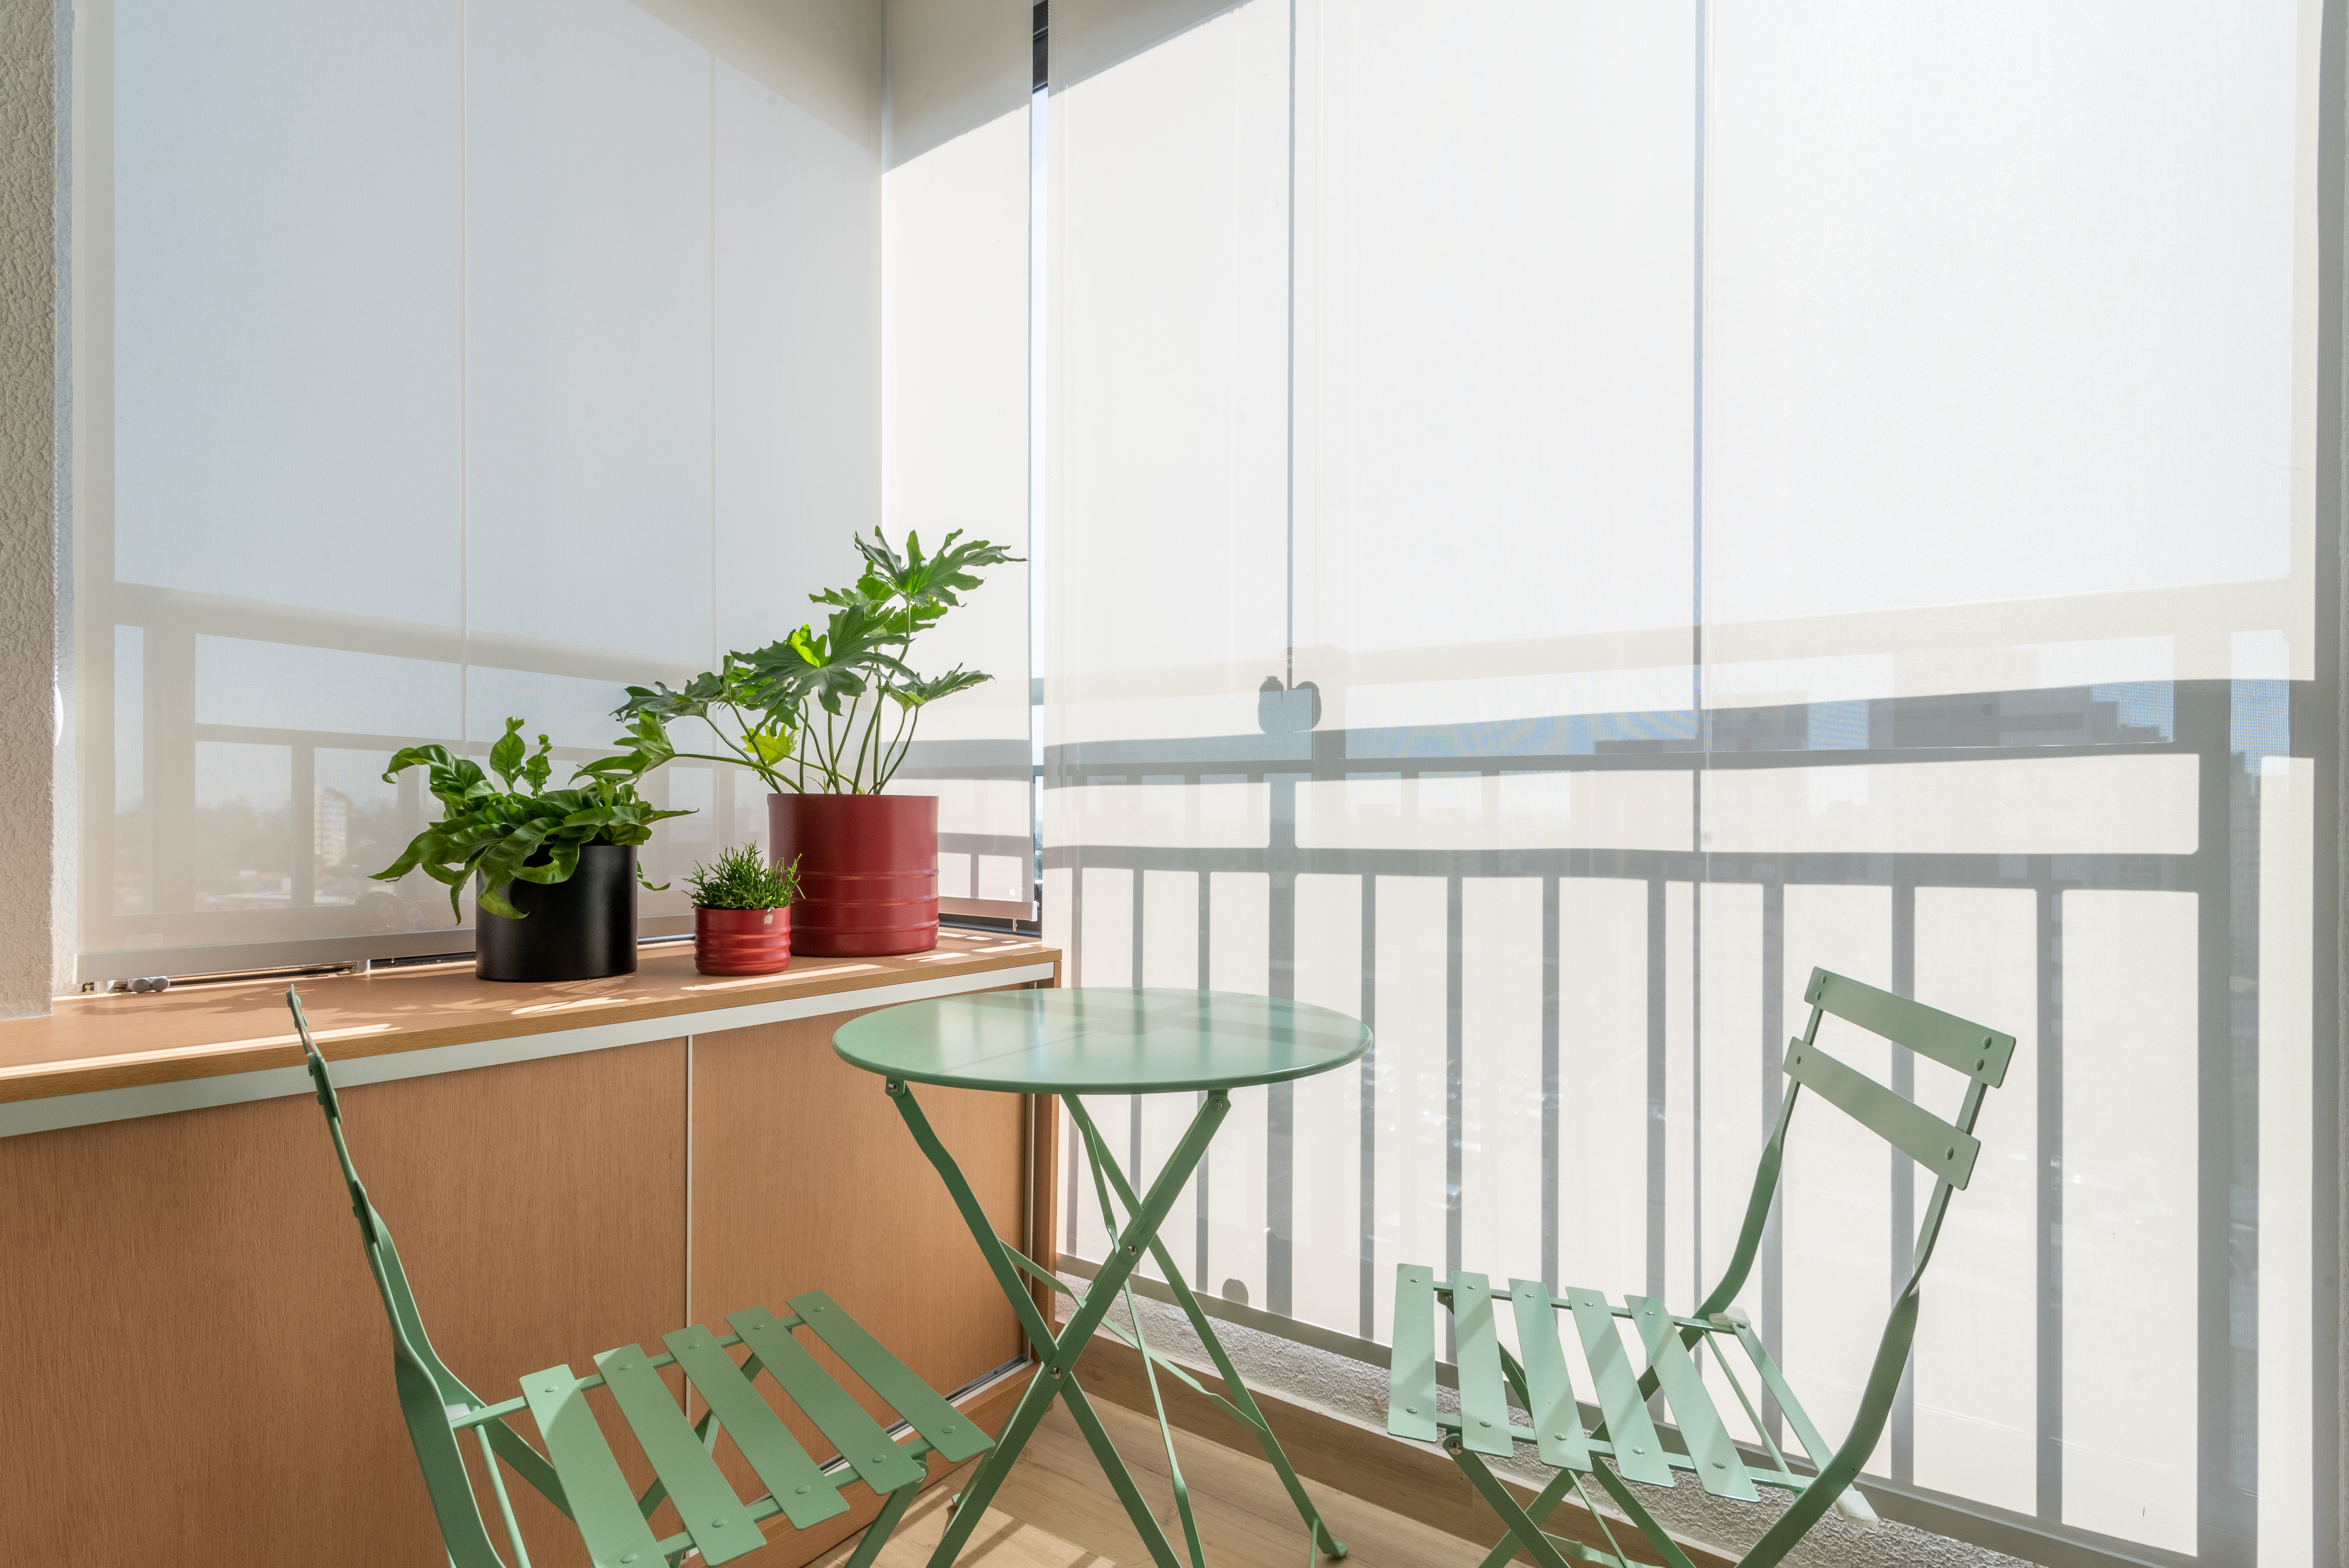 Caixa de marcenaria verde abriga cozinha, bancada e tv em estúdio de 34 m². Projeto de Abrazo Arquitetura. Na foto, varanda com mesa pequena e cadeiras verdes.